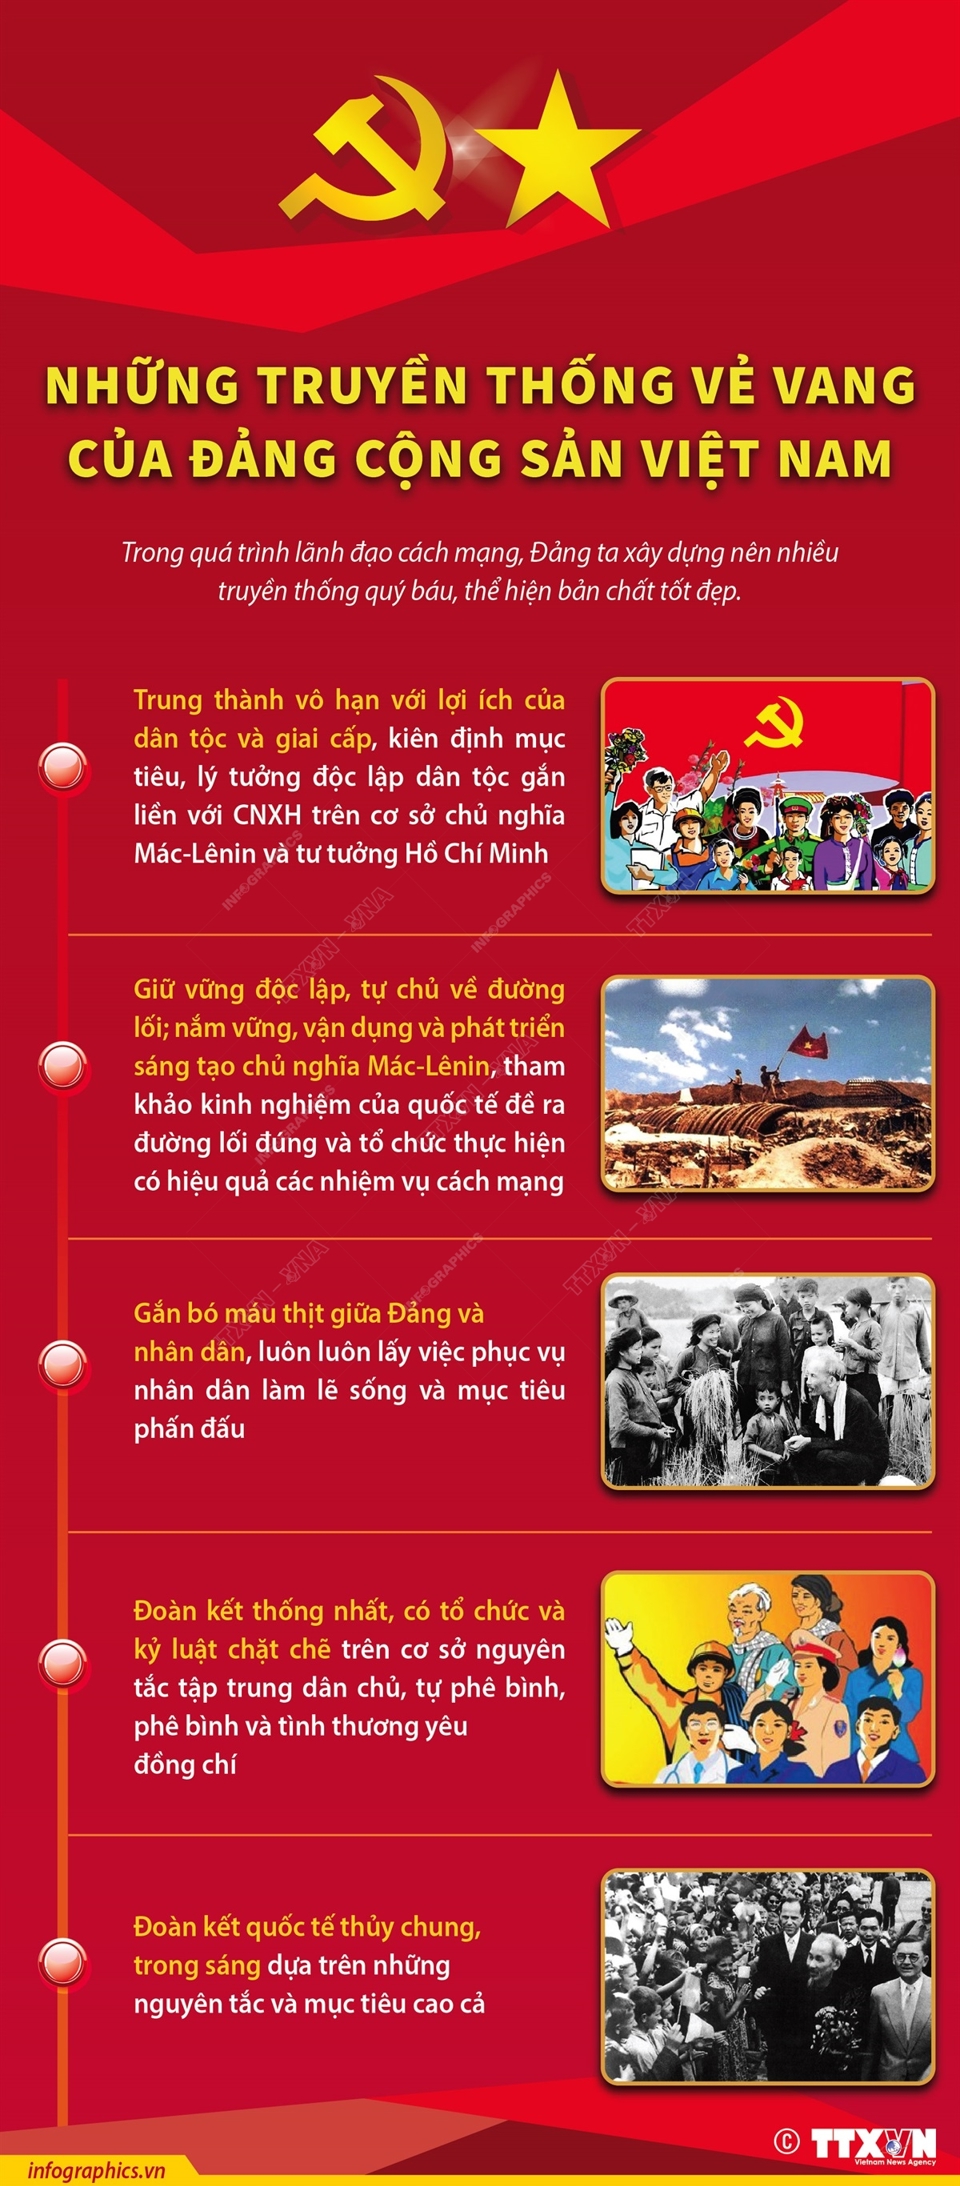 Những truyền thống vẻ vang của Đảng Cộng sản Việt Nam - Ảnh 1